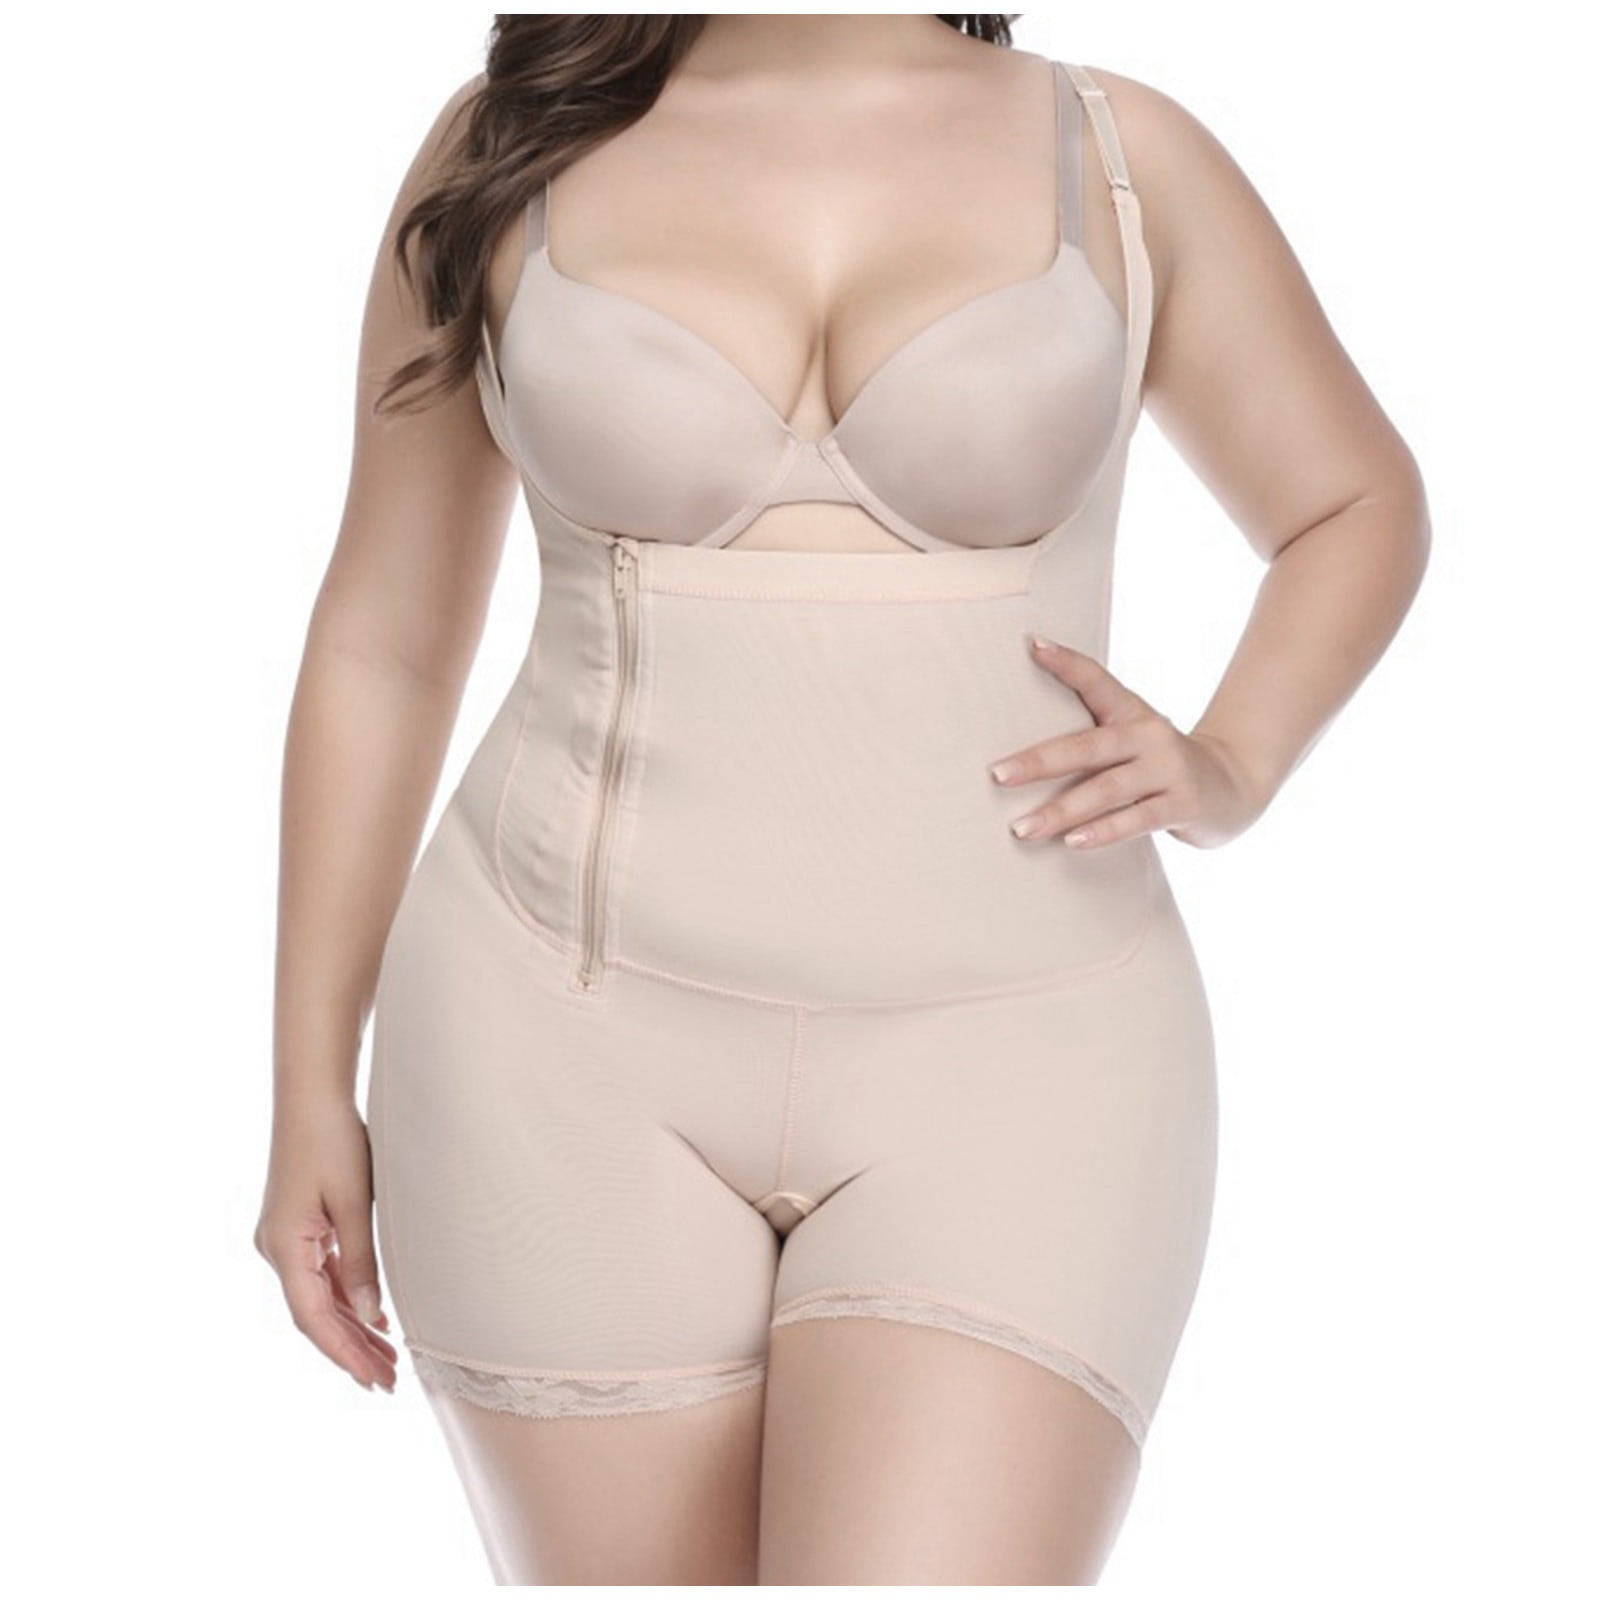 Herrnalise Plus Women' shapewear Tummy Control Body Shaper Breast